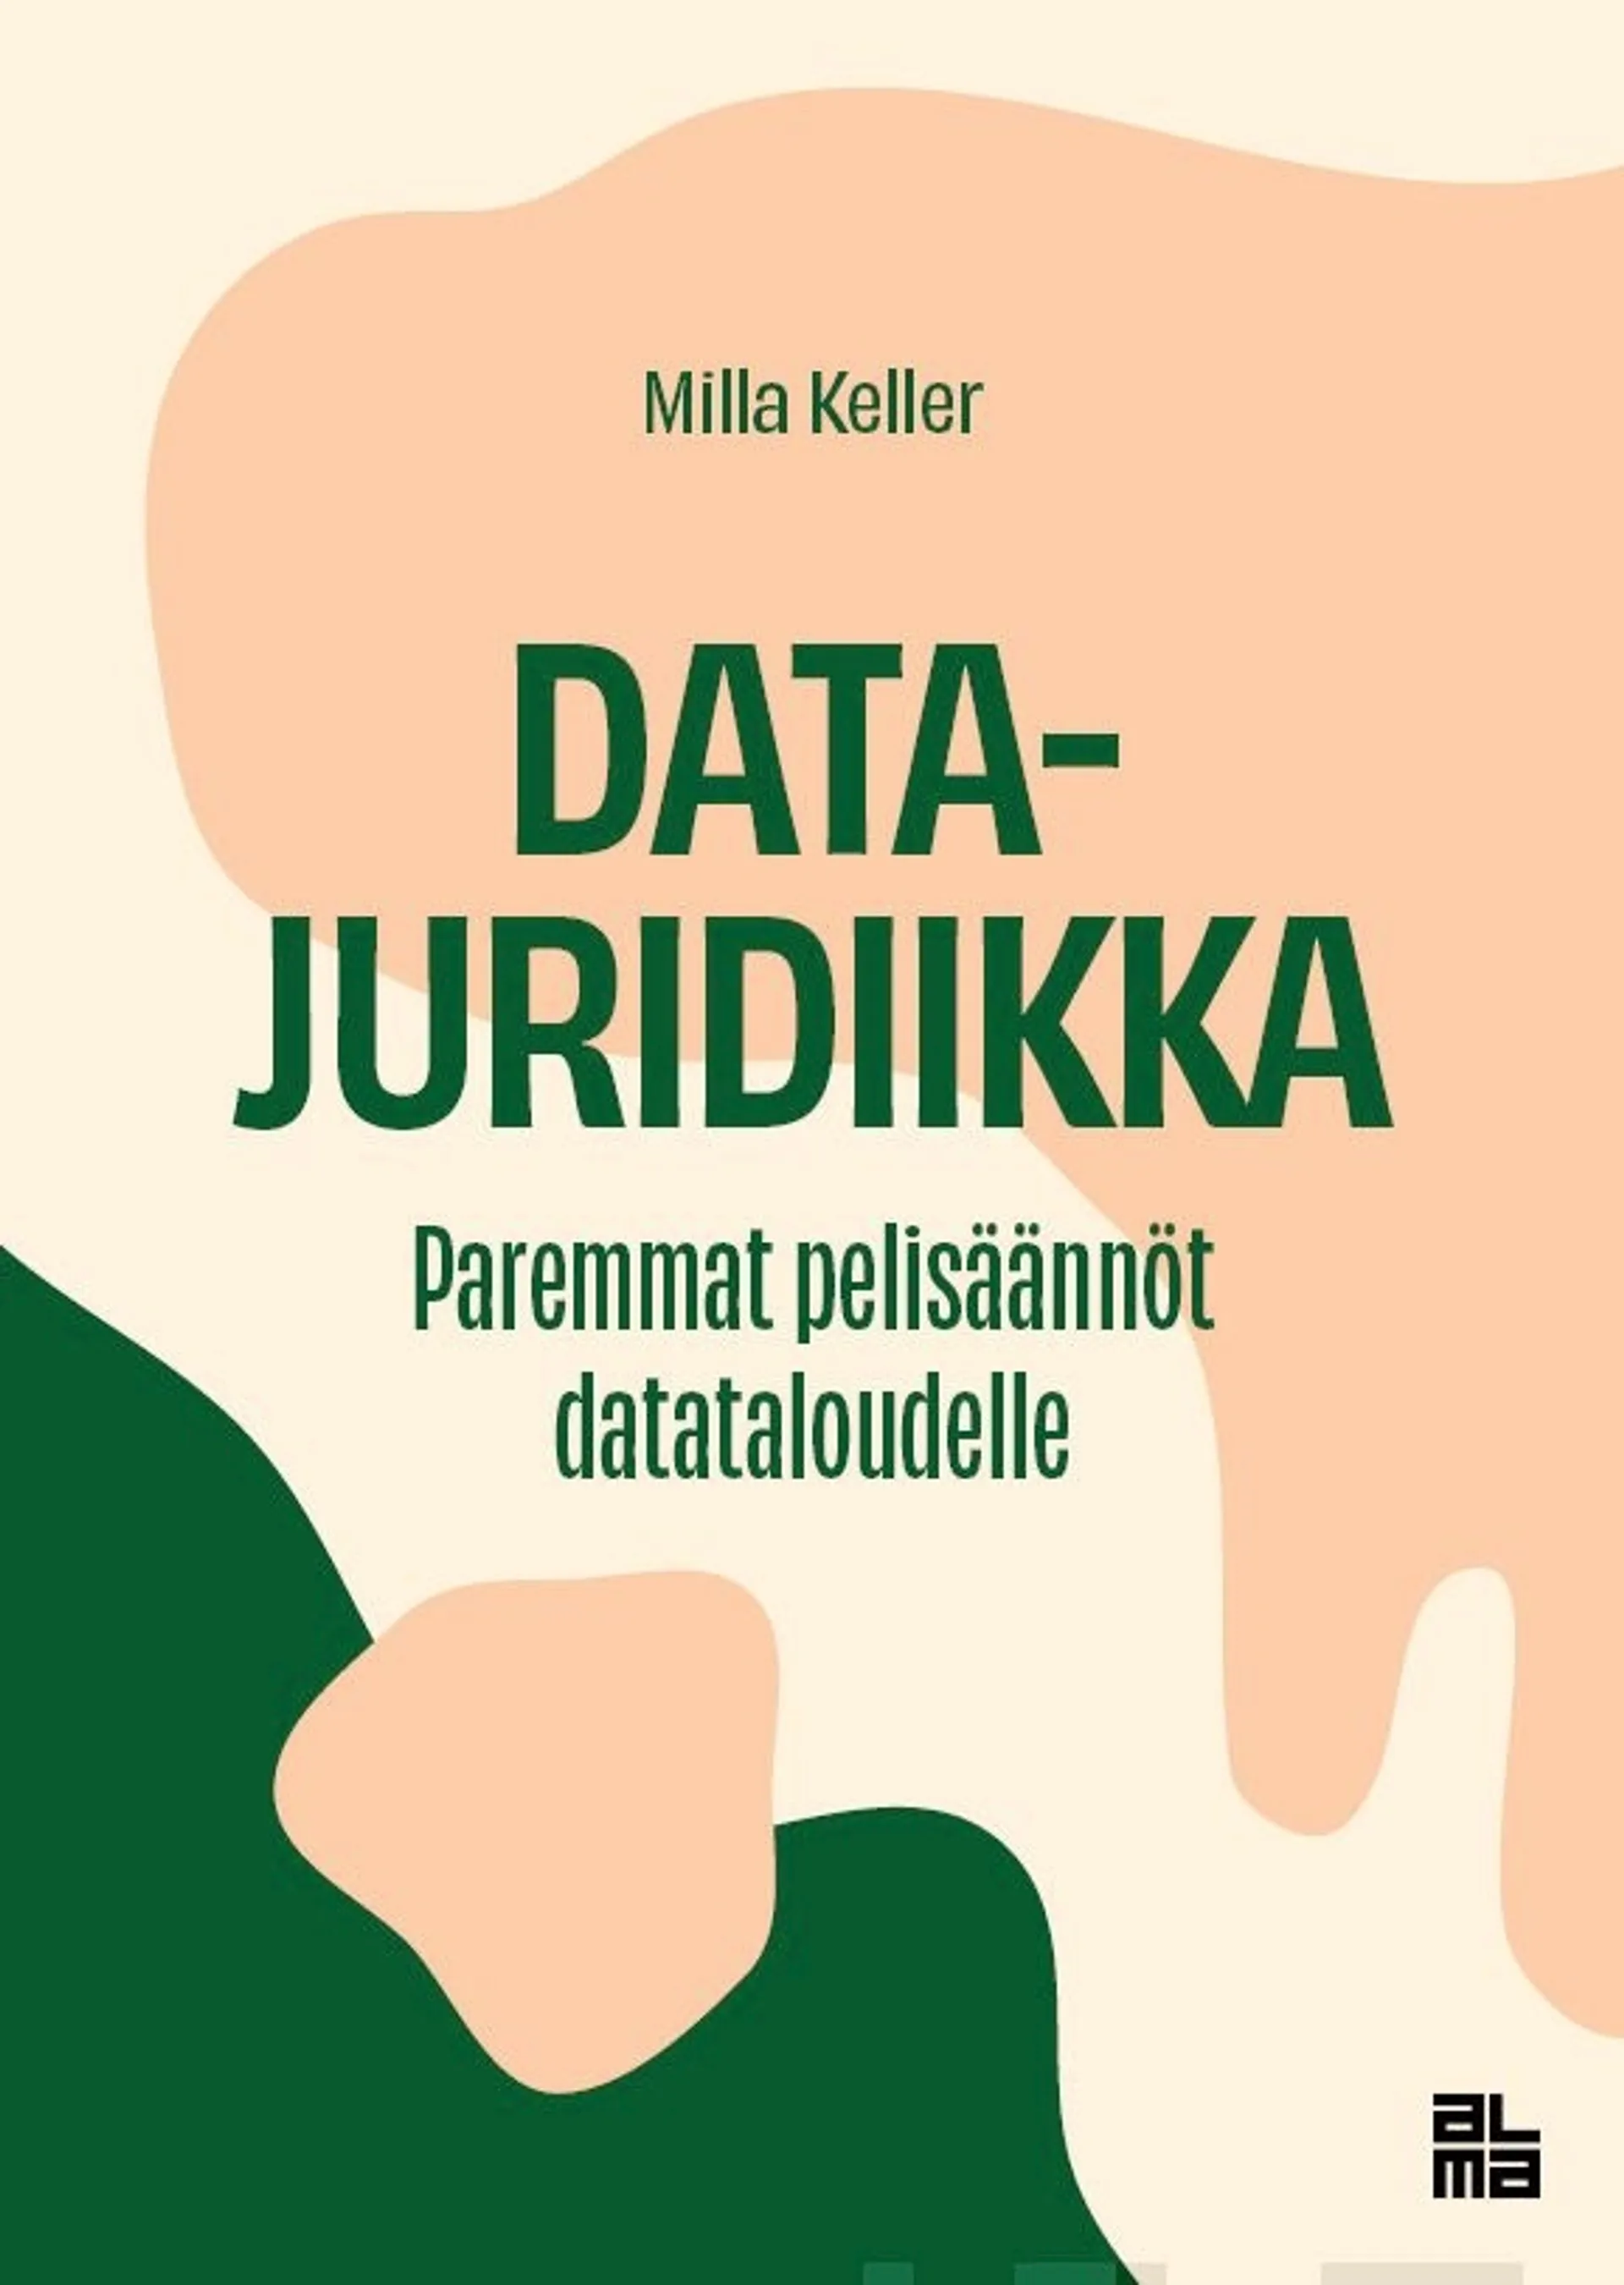 Keller, Datajuridiikka - Paremmat pelisäännöt datataloudelle